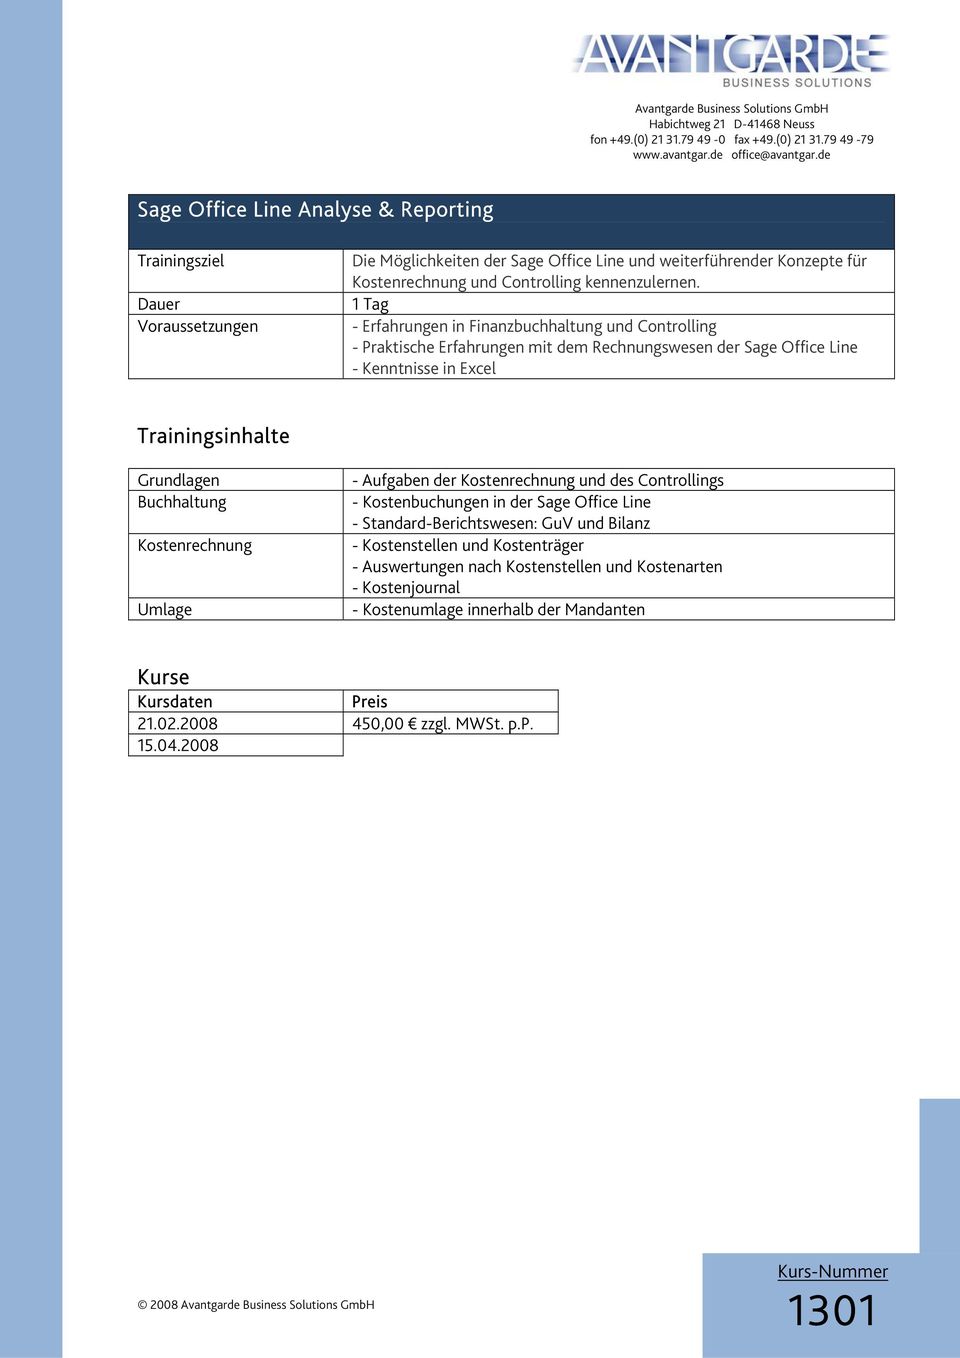 Kostenrechnung Umlage - Aufgaben der Kostenrechnung und des Controllings - Kostenbuchungen in der Sage Office Line - Standard-Berichtswesen: GuV und Bilanz -